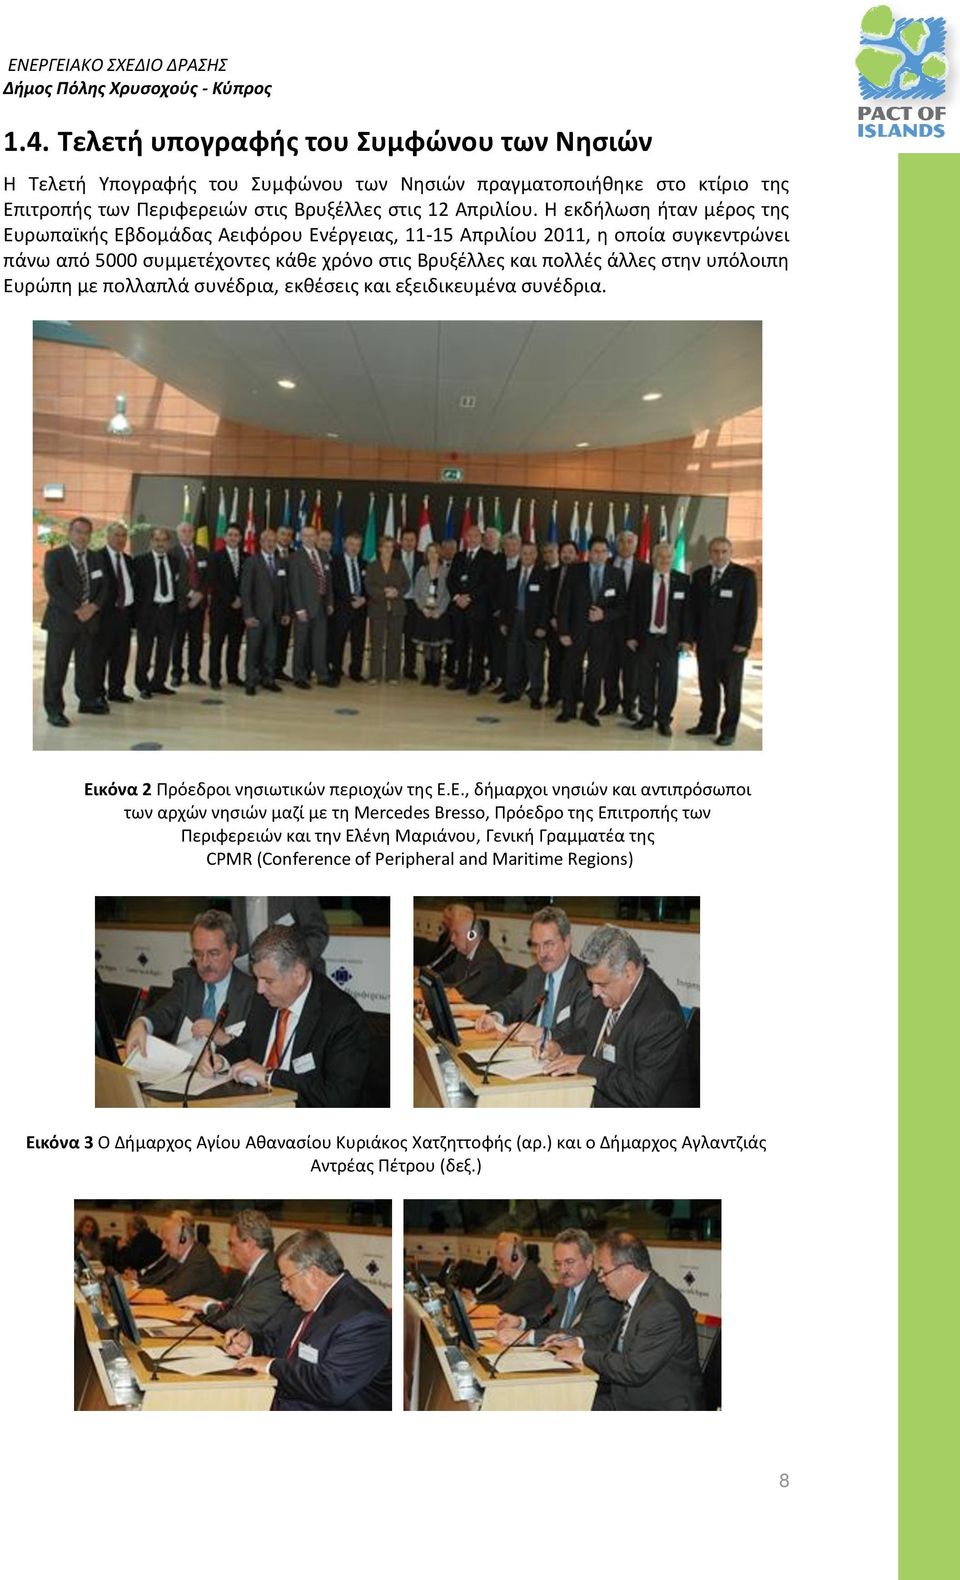 Ευρώπη με πολλαπλά συνέδρια, εκθέσεις και εξειδικευμένα συνέδρια. Εικόνα 2 Πρόεδροι νησιωτικών περιοχών της Ε.Ε., δήμαρχοι νησιών και αντιπρόσωποι των αρχών νησιών μαζί με τη Mercedes Bresso, Πρόεδρο